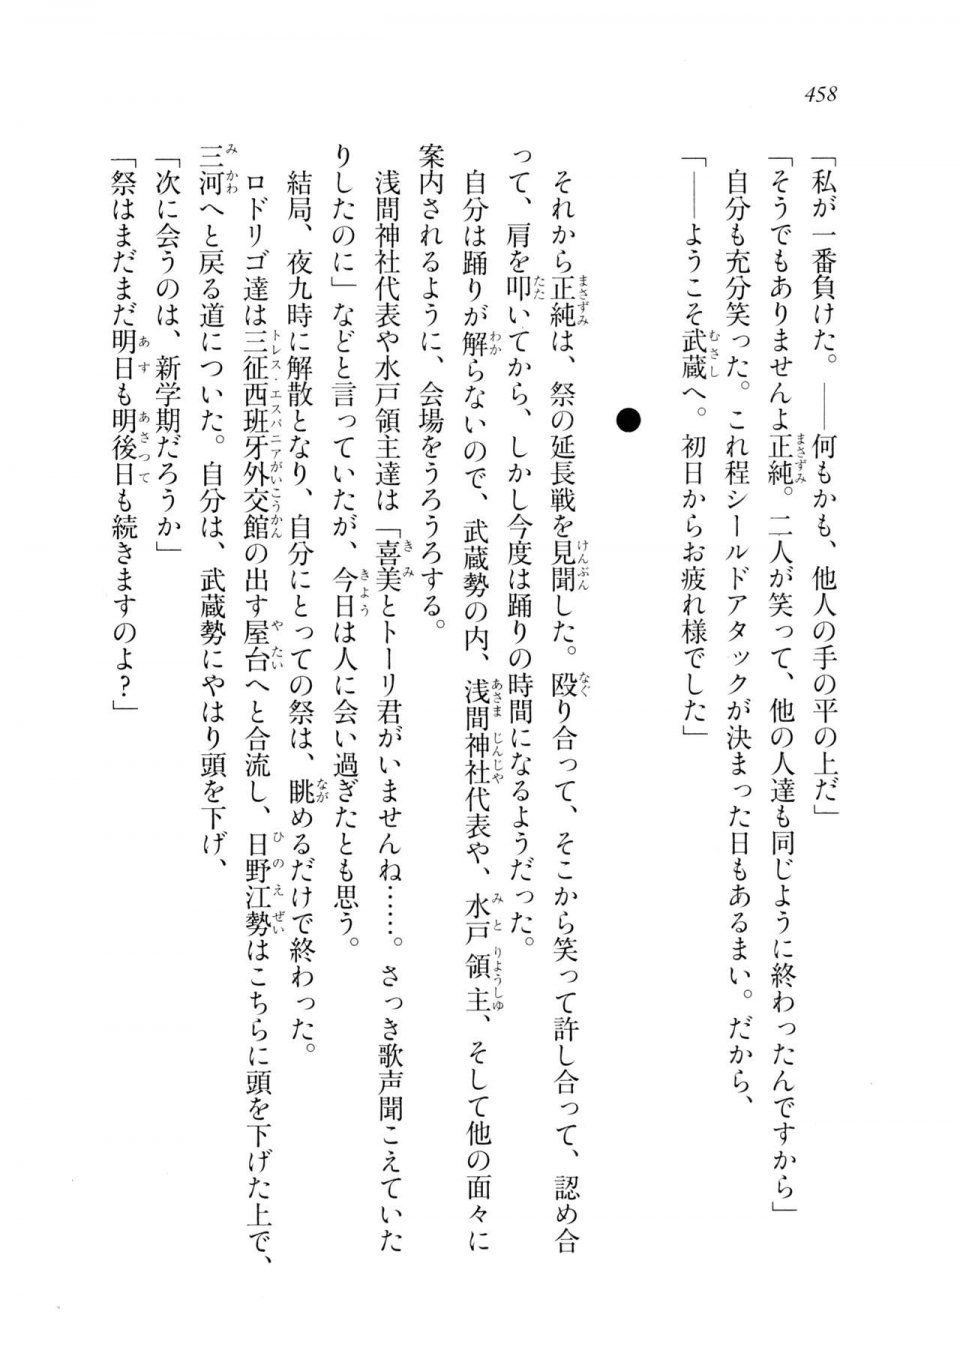 Kyoukai Senjou no Horizon LN Sidestory Vol 2 - Photo #456